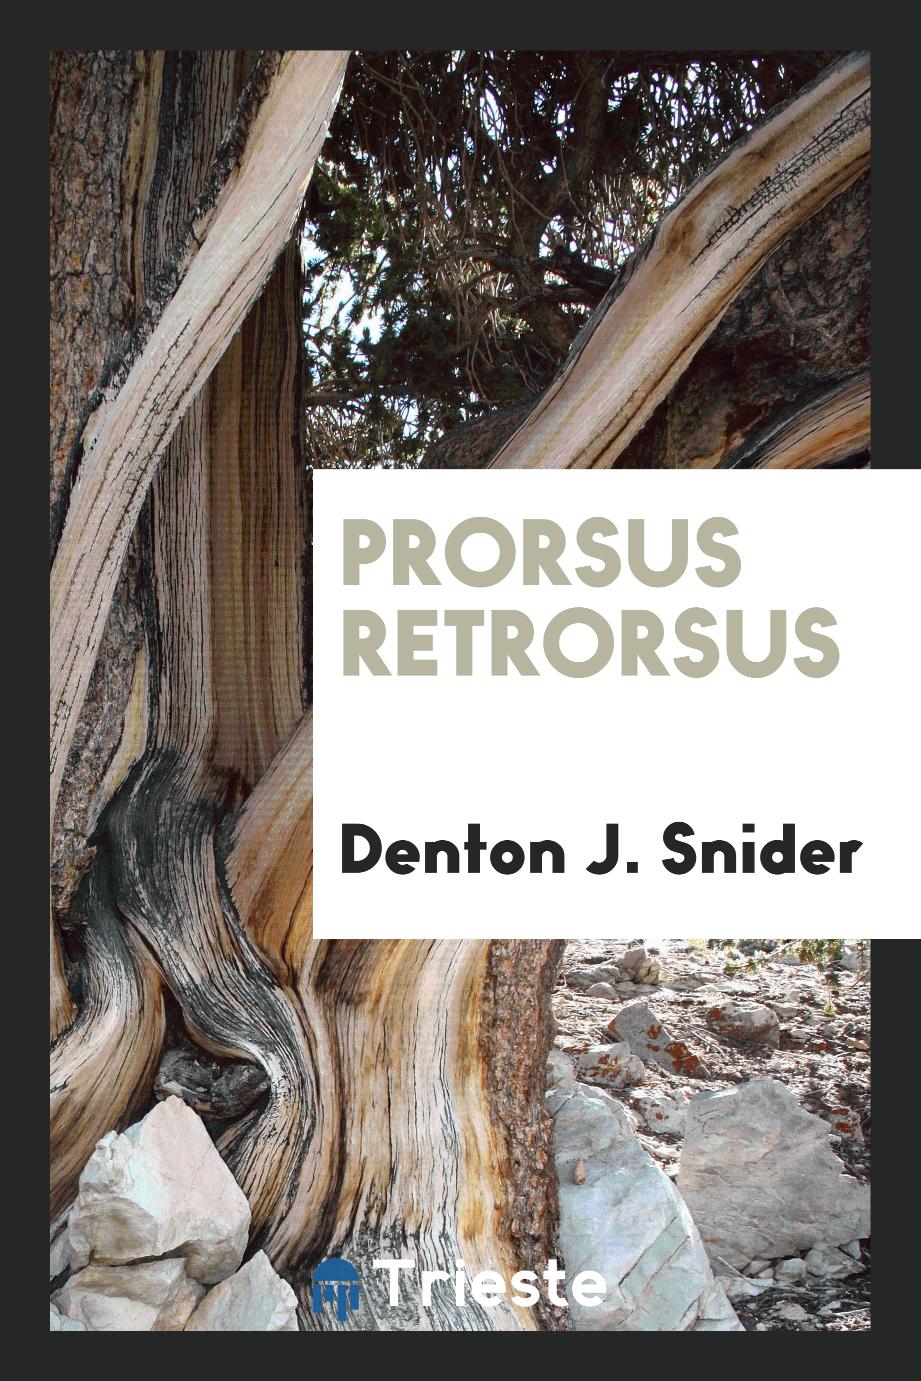 Prorsus Retrorsus